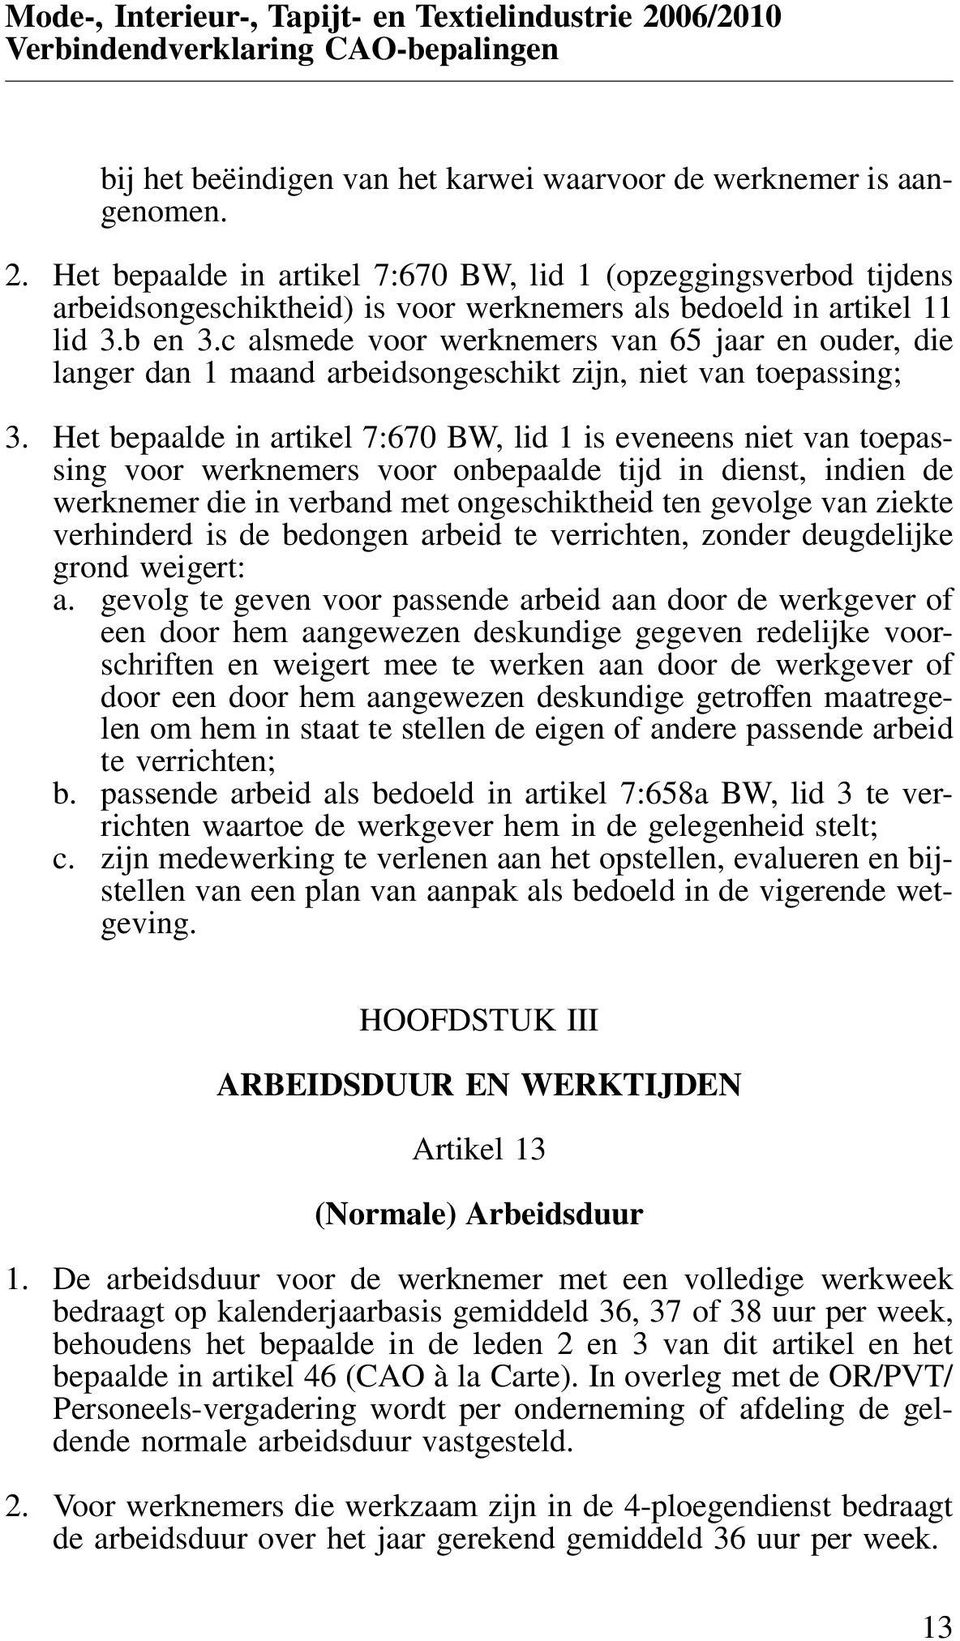 Het bepaalde in artikel 7:670 BW, lid 1 is eveneens niet van toepassing voor werknemers voor onbepaalde tijd in dienst, indien de werknemer die in verband met ongeschiktheid ten gevolge van ziekte